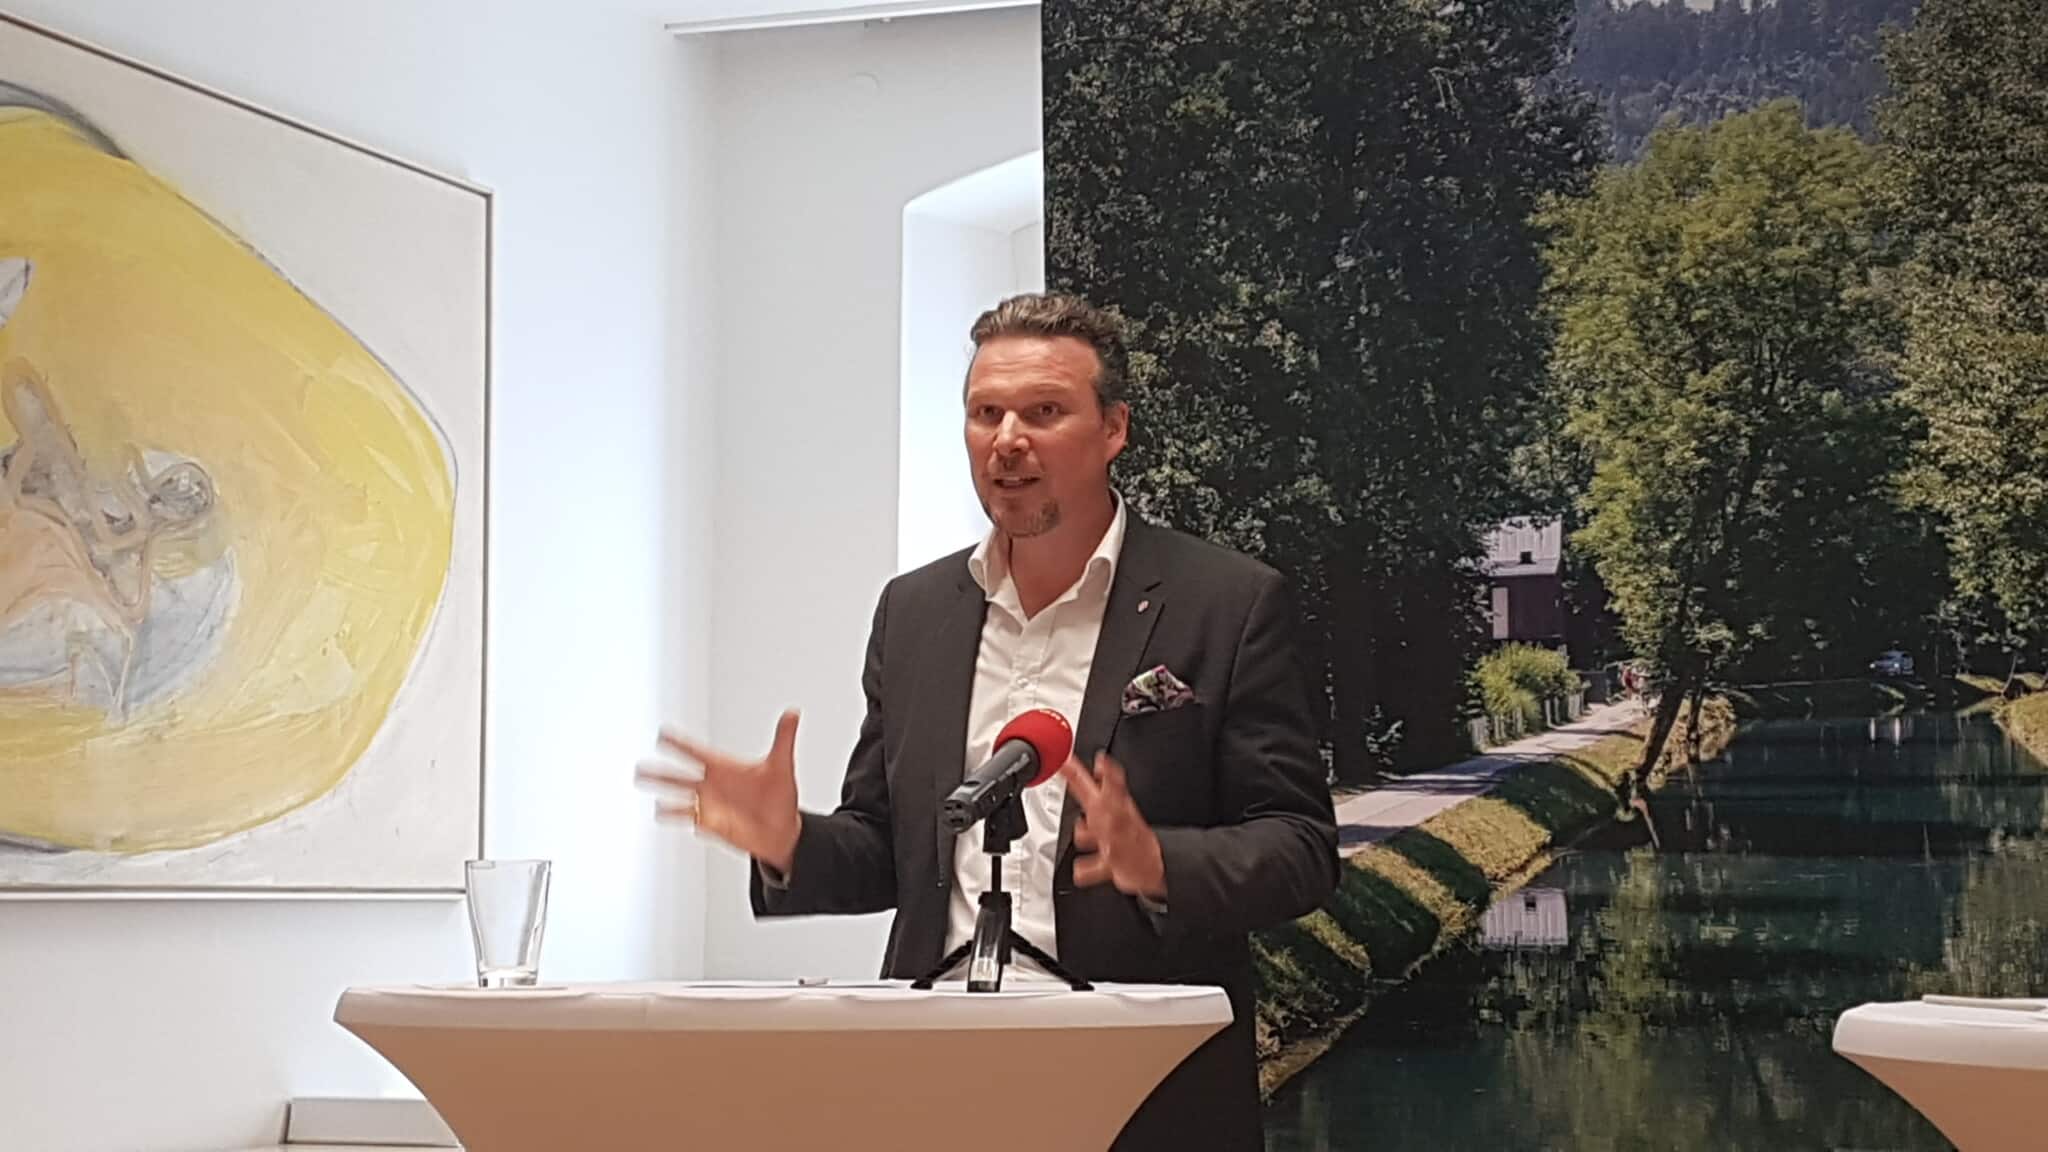 Der Klagenfurter Vizebürgermeister Wolfgang Germ (FPÖ) fordert die Installation eines Jugendbeirates, um Jugendlichen in Klagenfurt mehr Gehör zu schenken.